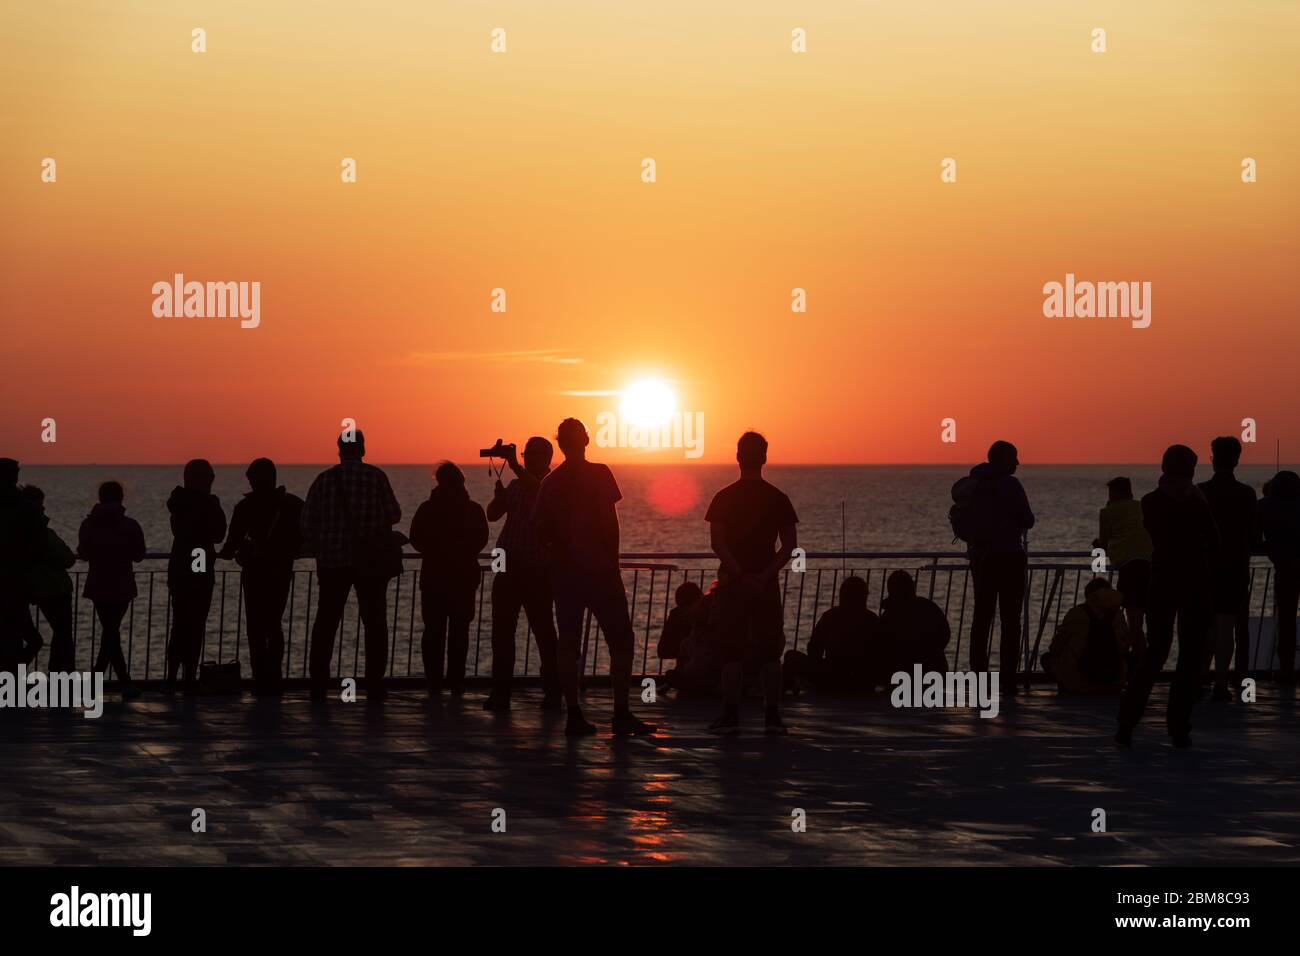 Silhouetten von Menschen gegen die untergehende Sonne auf dem Deck eines Kreuzfahrtschiffes. Ruhiges Meer und klarer orangener Himmel am Abend. Kreuzfahrt Urlaub Hintergrund Stockfoto